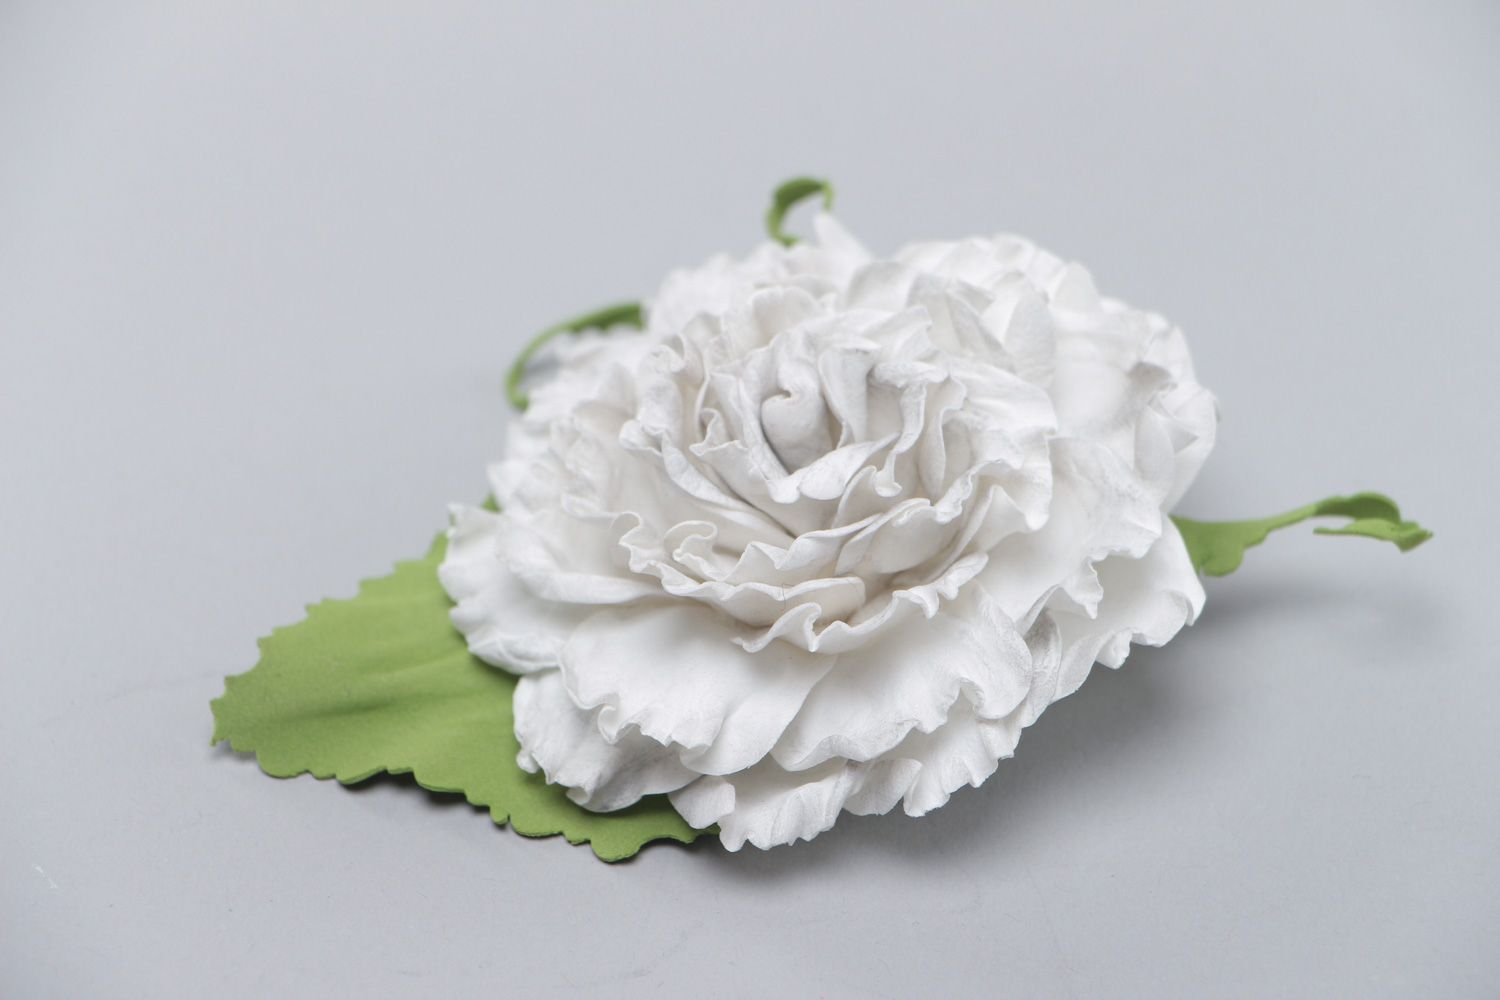 Брошь-заколка из пластичной замши ручной работы в виде пышного белого цветка фото 2